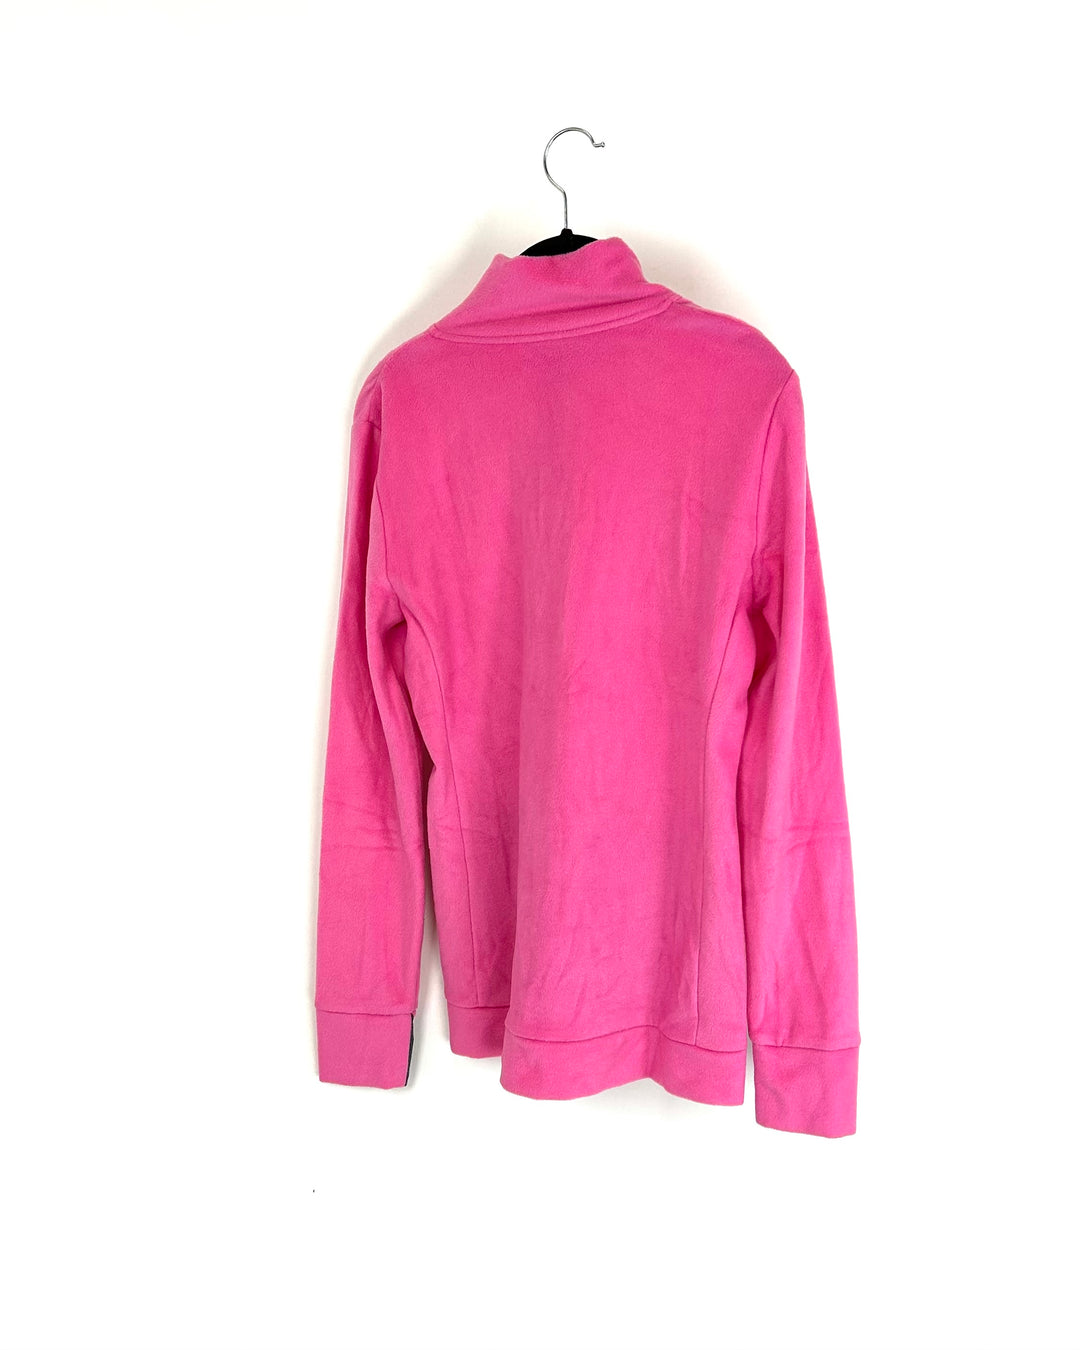 Pink Fleece Long Sleeve Top - Size 4/6